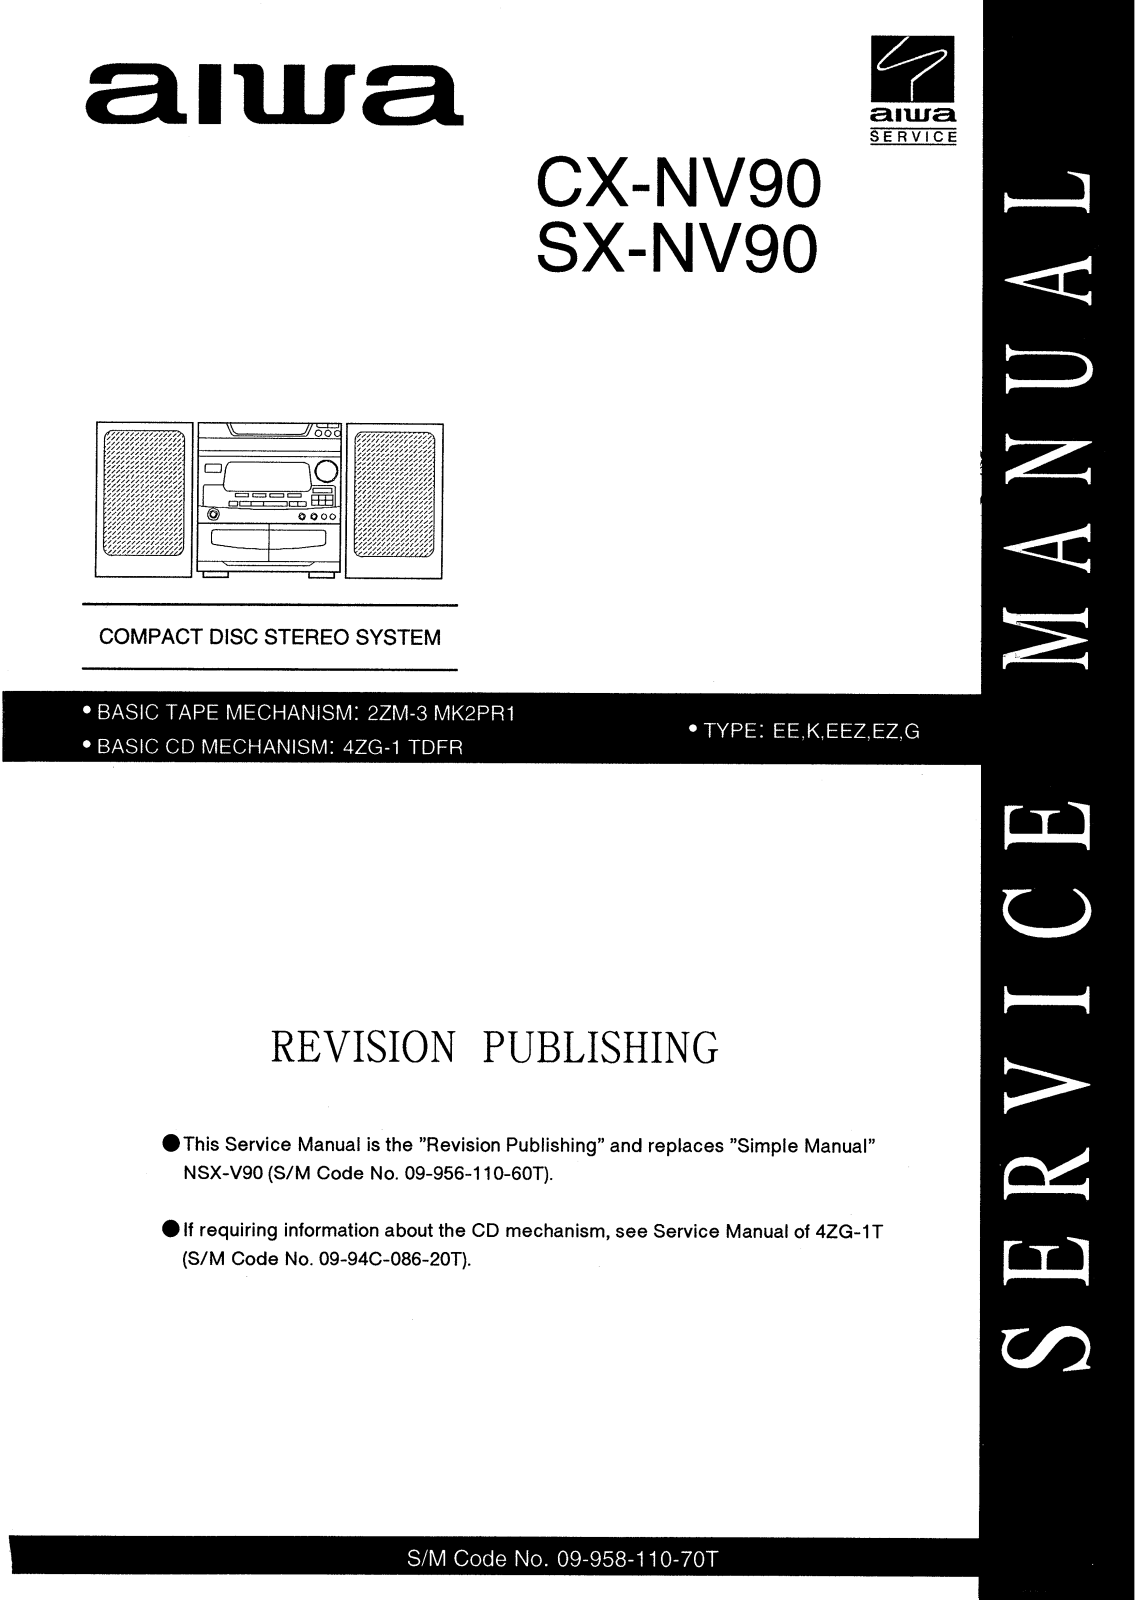 Aiwa SXNV-90, CXNV-90 Service manual